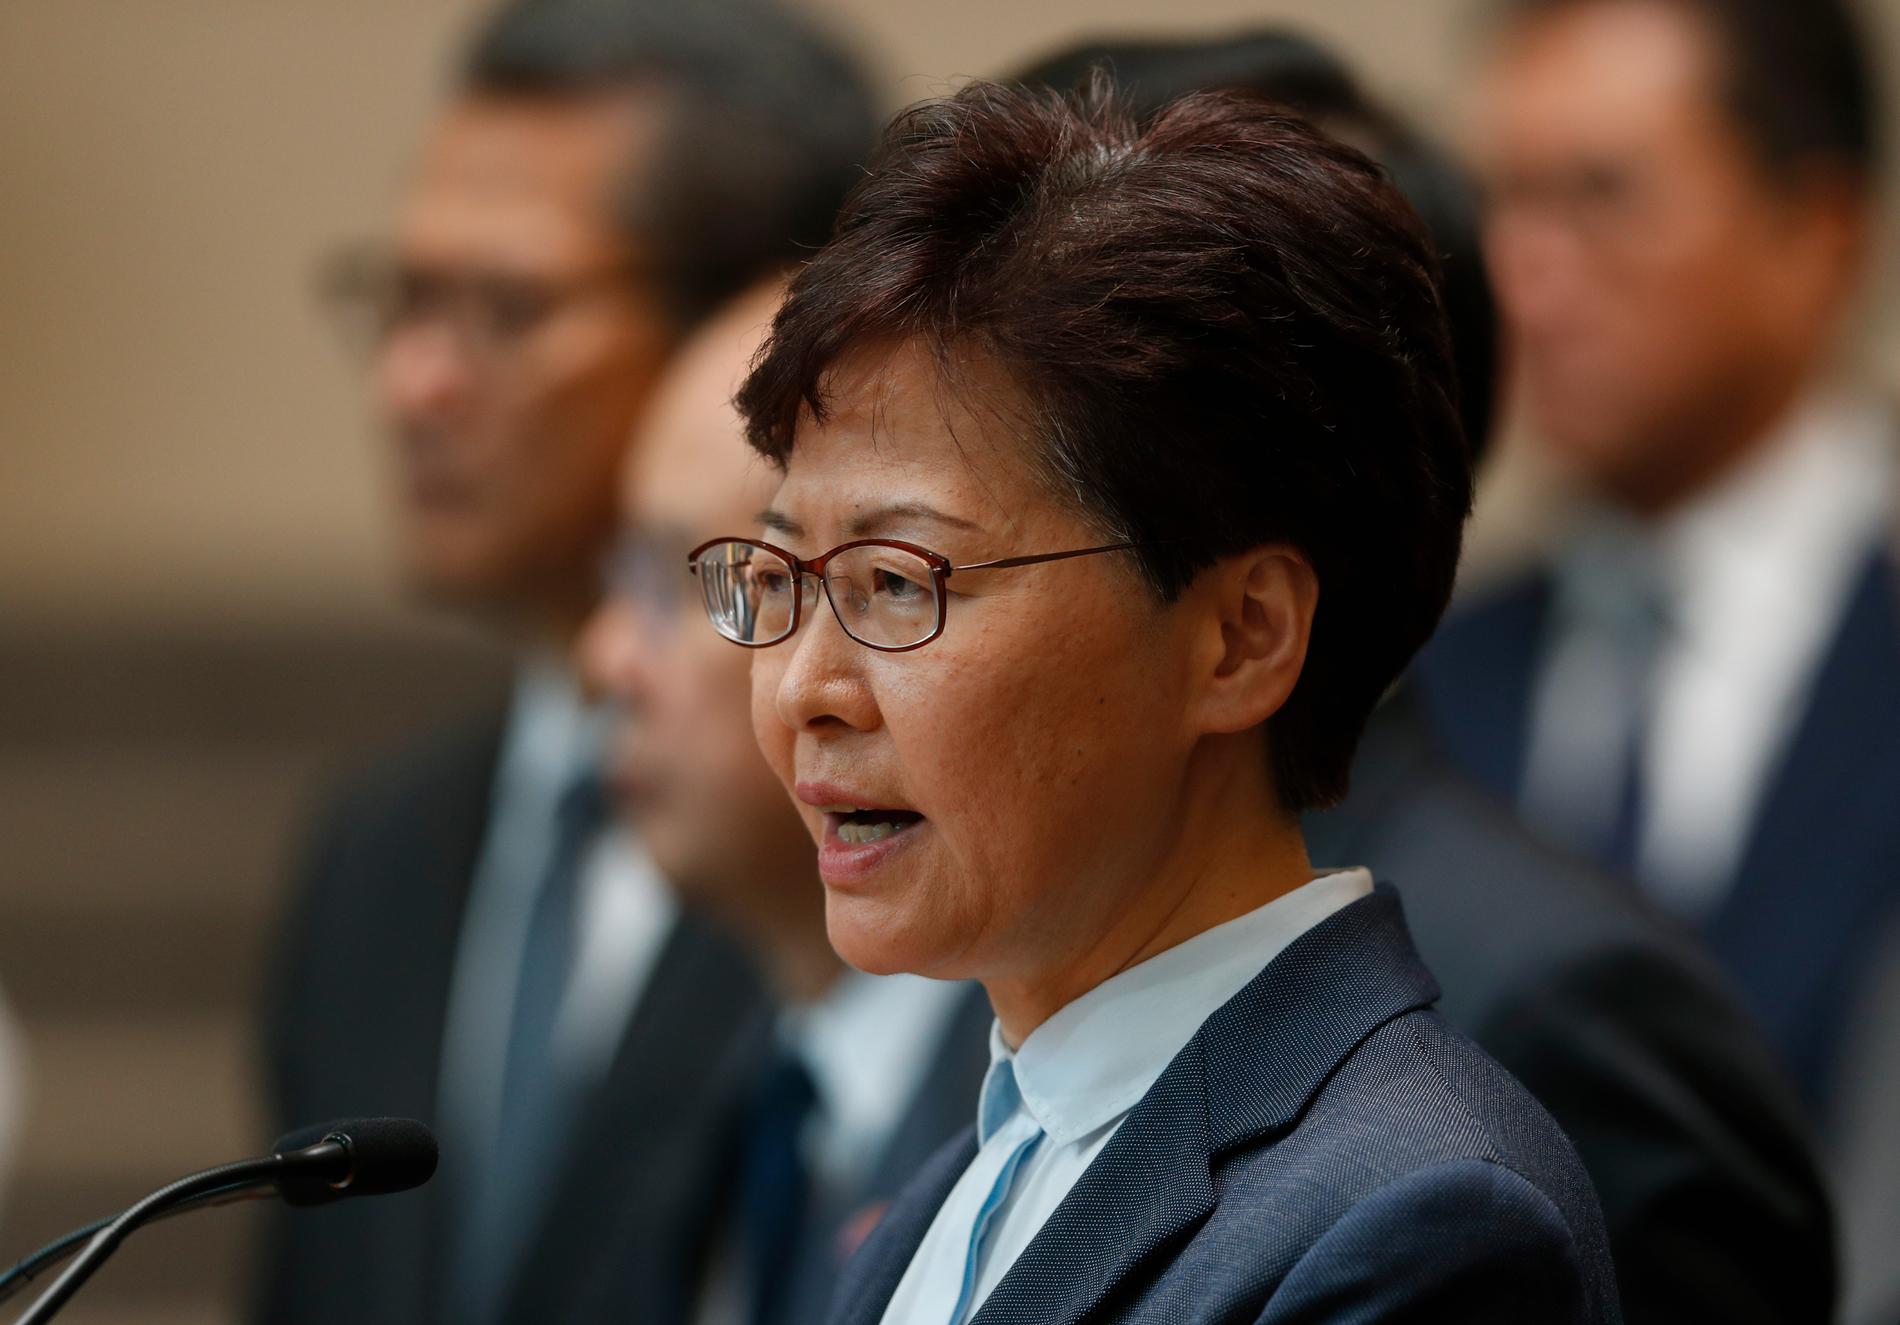 Hongkongs högsta politiker, den Pekingvänlige Carrie Lam, har haft några utmanande månader på jobbet. Först fick Lam dra tillbaka lagförslaget om nya utlämningsregler, därefter har hon fått hantera efterdyningar av sammandrabbningarna mellan polis och civila i det som blivit Hongkongs värsta politiska kris sedan överlämnandet.